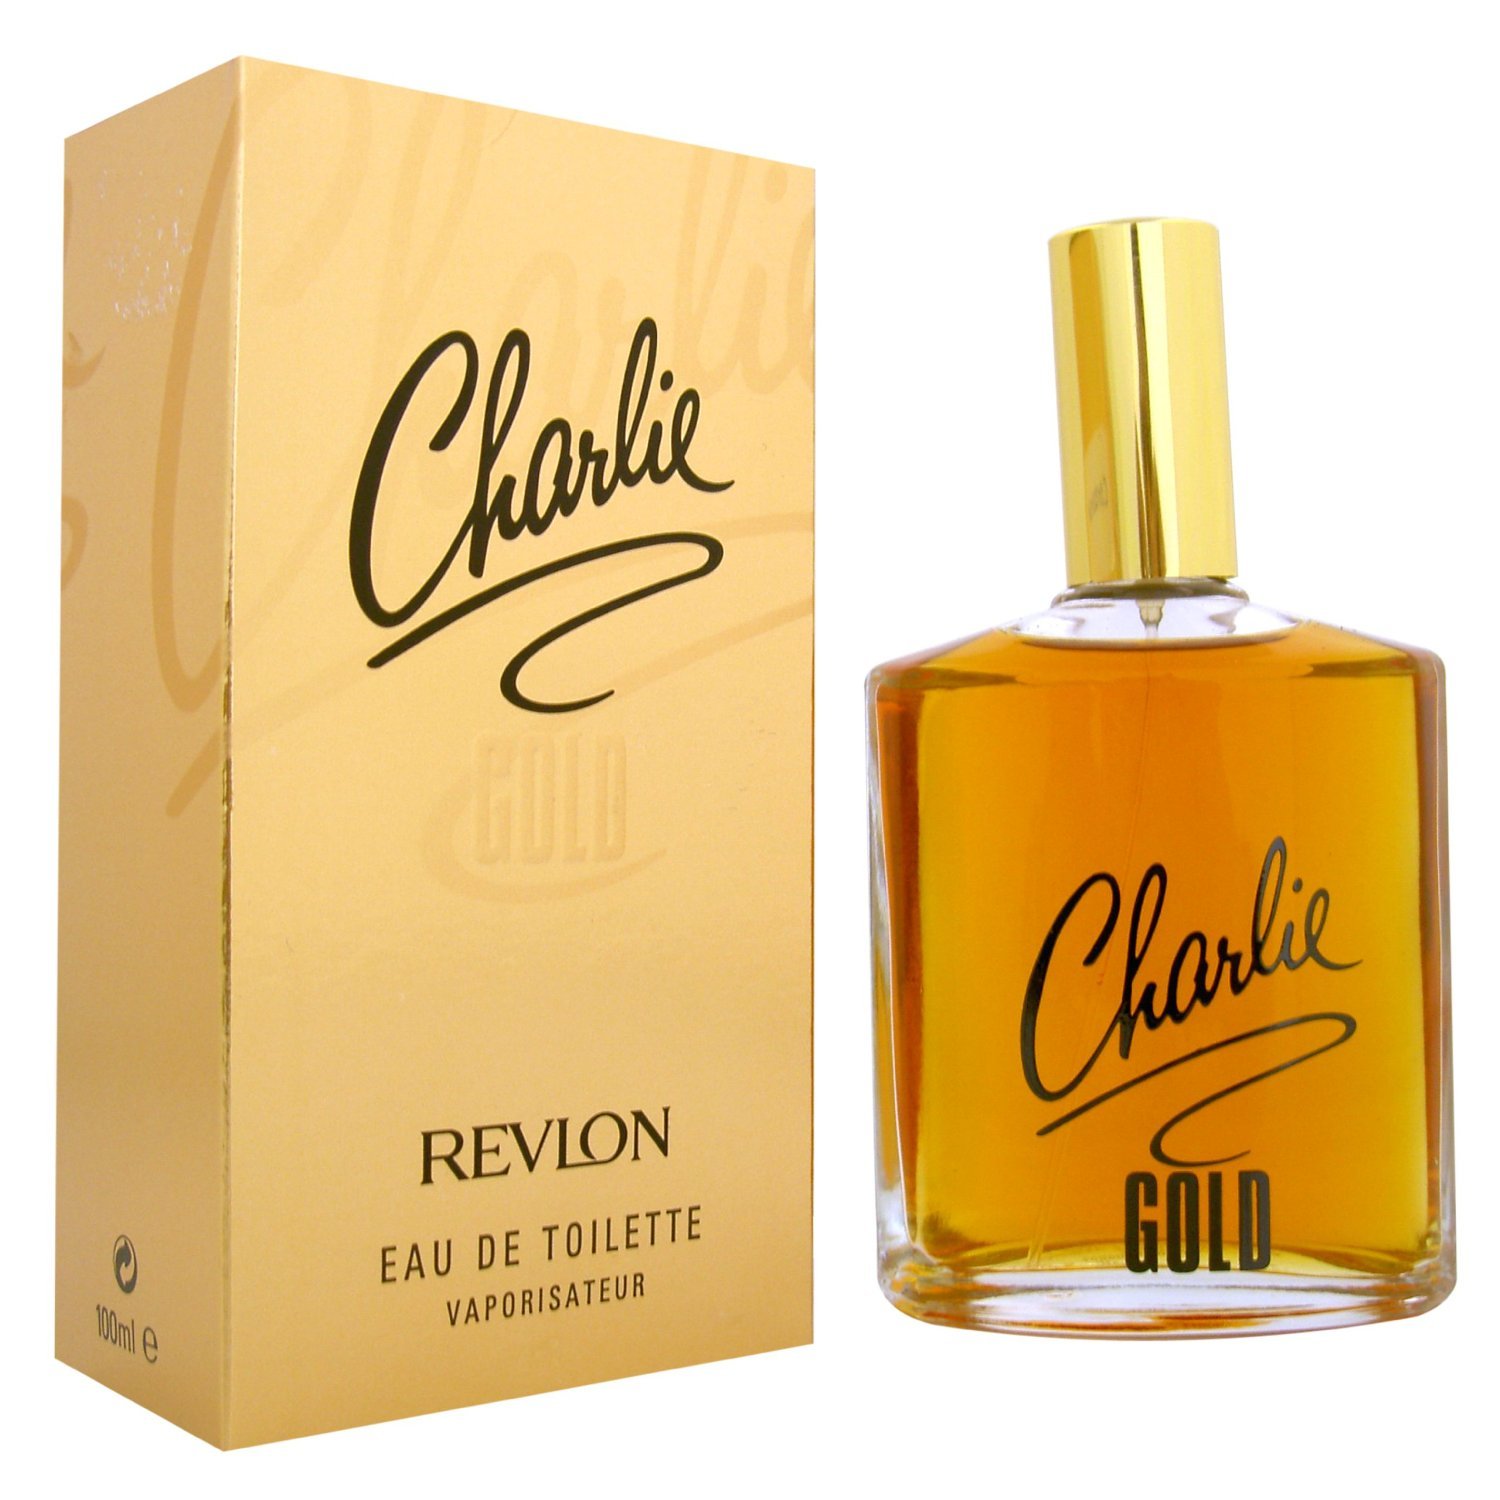 Revlon Charlie Gold Perfume Eau De Toilette Review